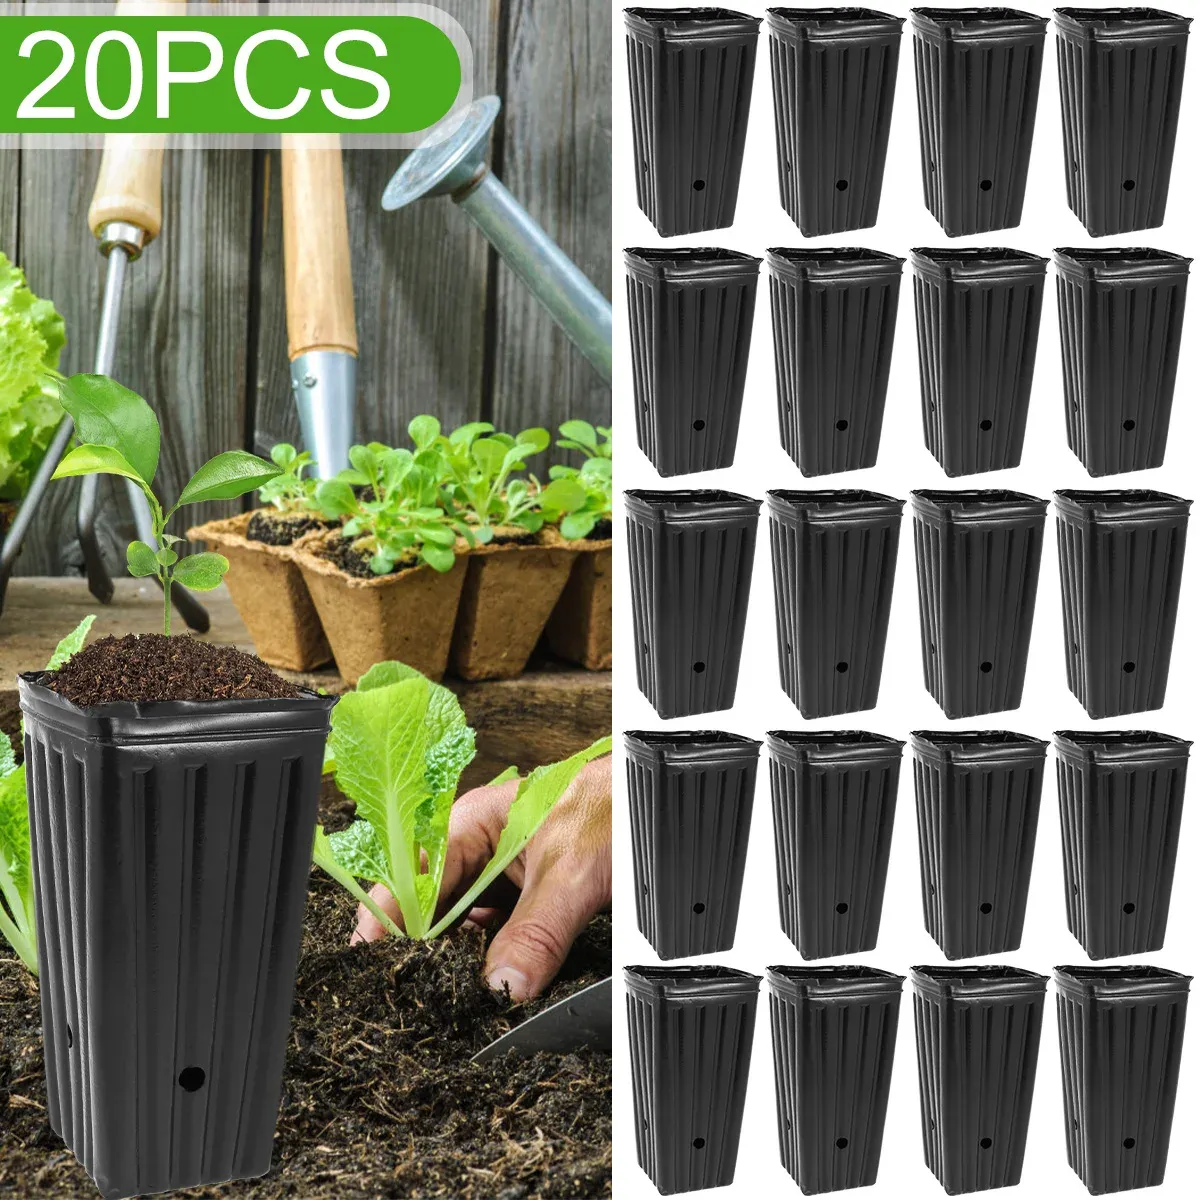 Vasi 20 pezzi vaso alto per albero in plastica vaso per vivaio profondo vaso per piante da fiore alto 7,8 pollici con fori di drenaggio riutilizzabile